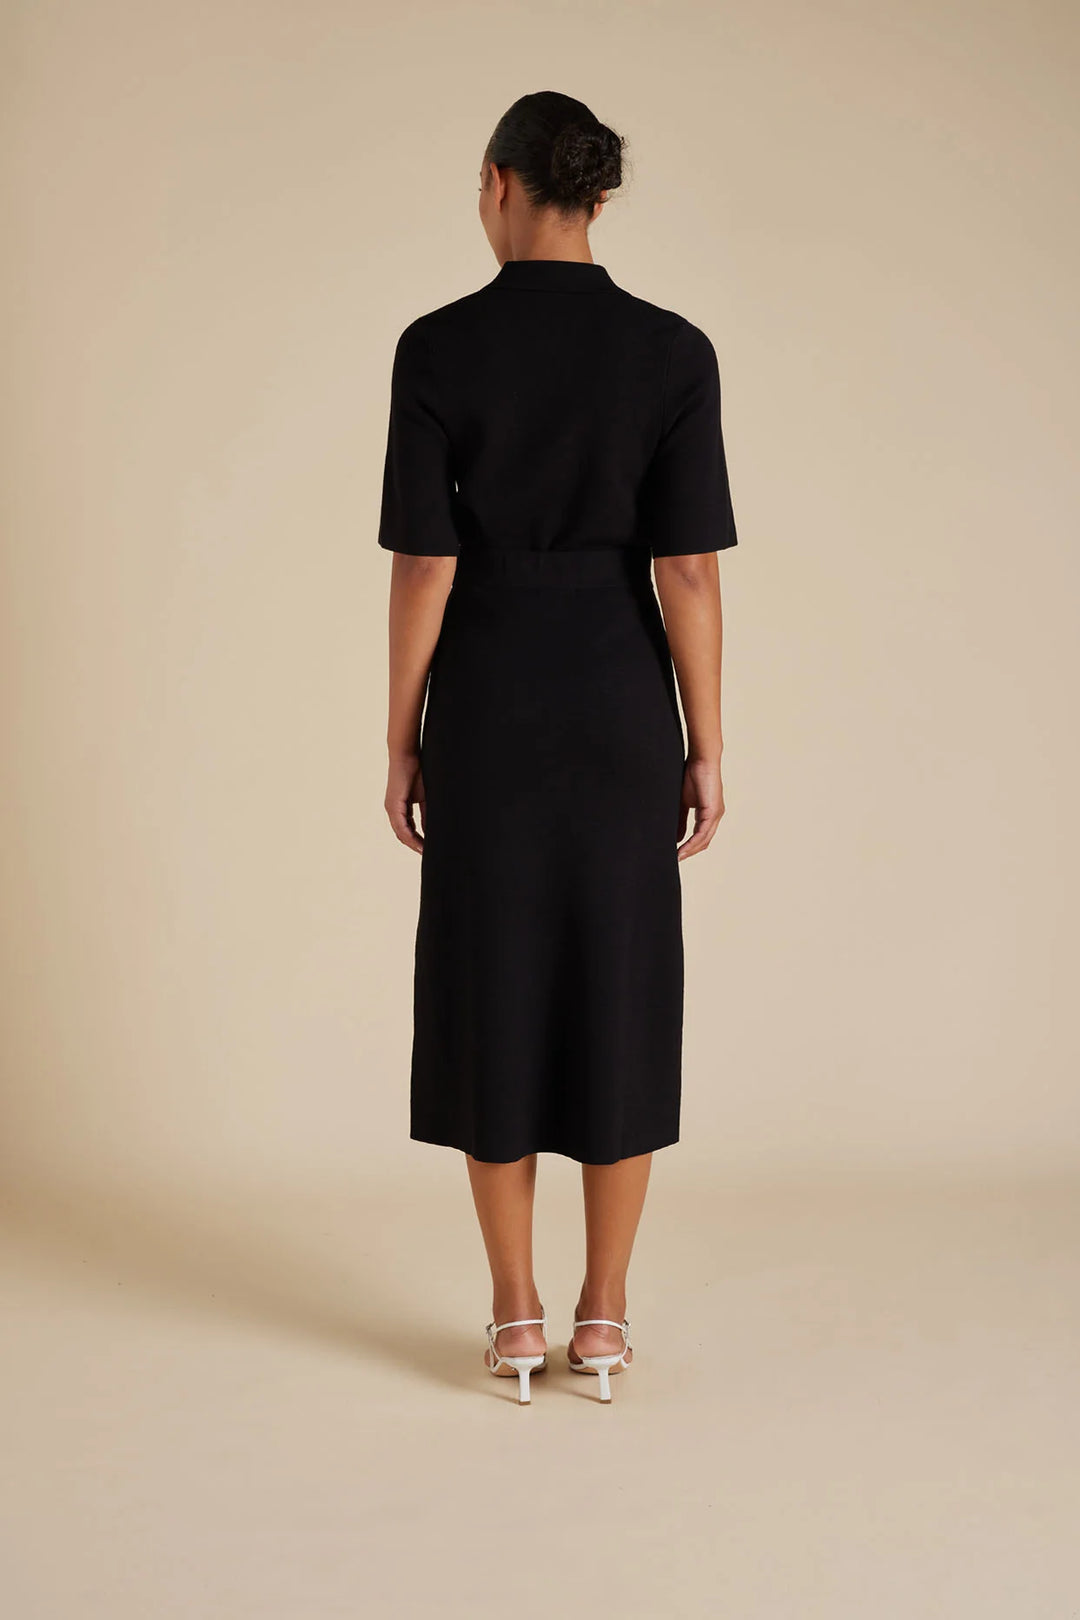 Alessandra | Chelsea Crepe Knit Skirt in Black